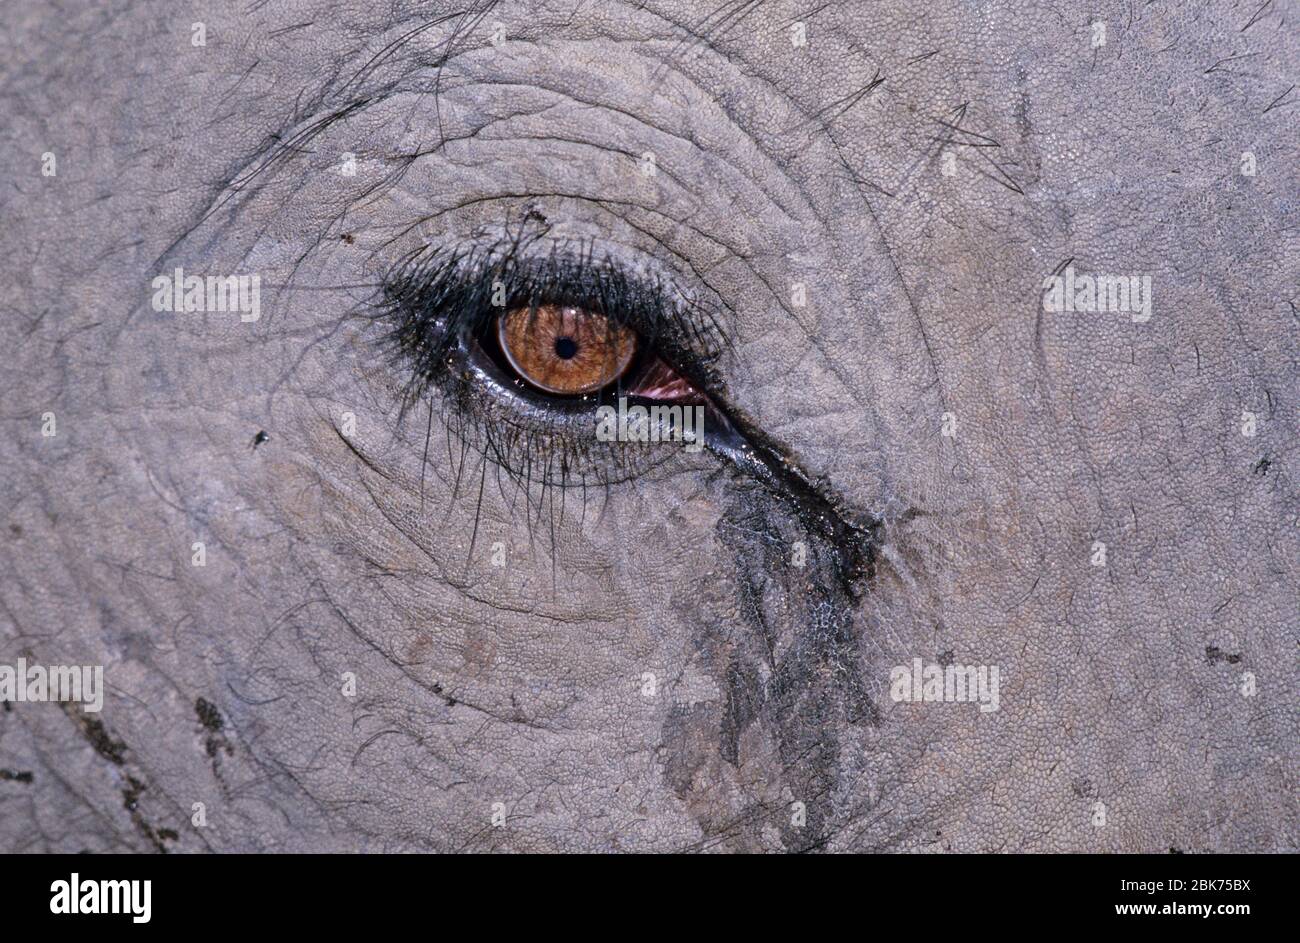 Éléphant d'Inde près de l'oeil Basndavgarh Inde Banque D'Images